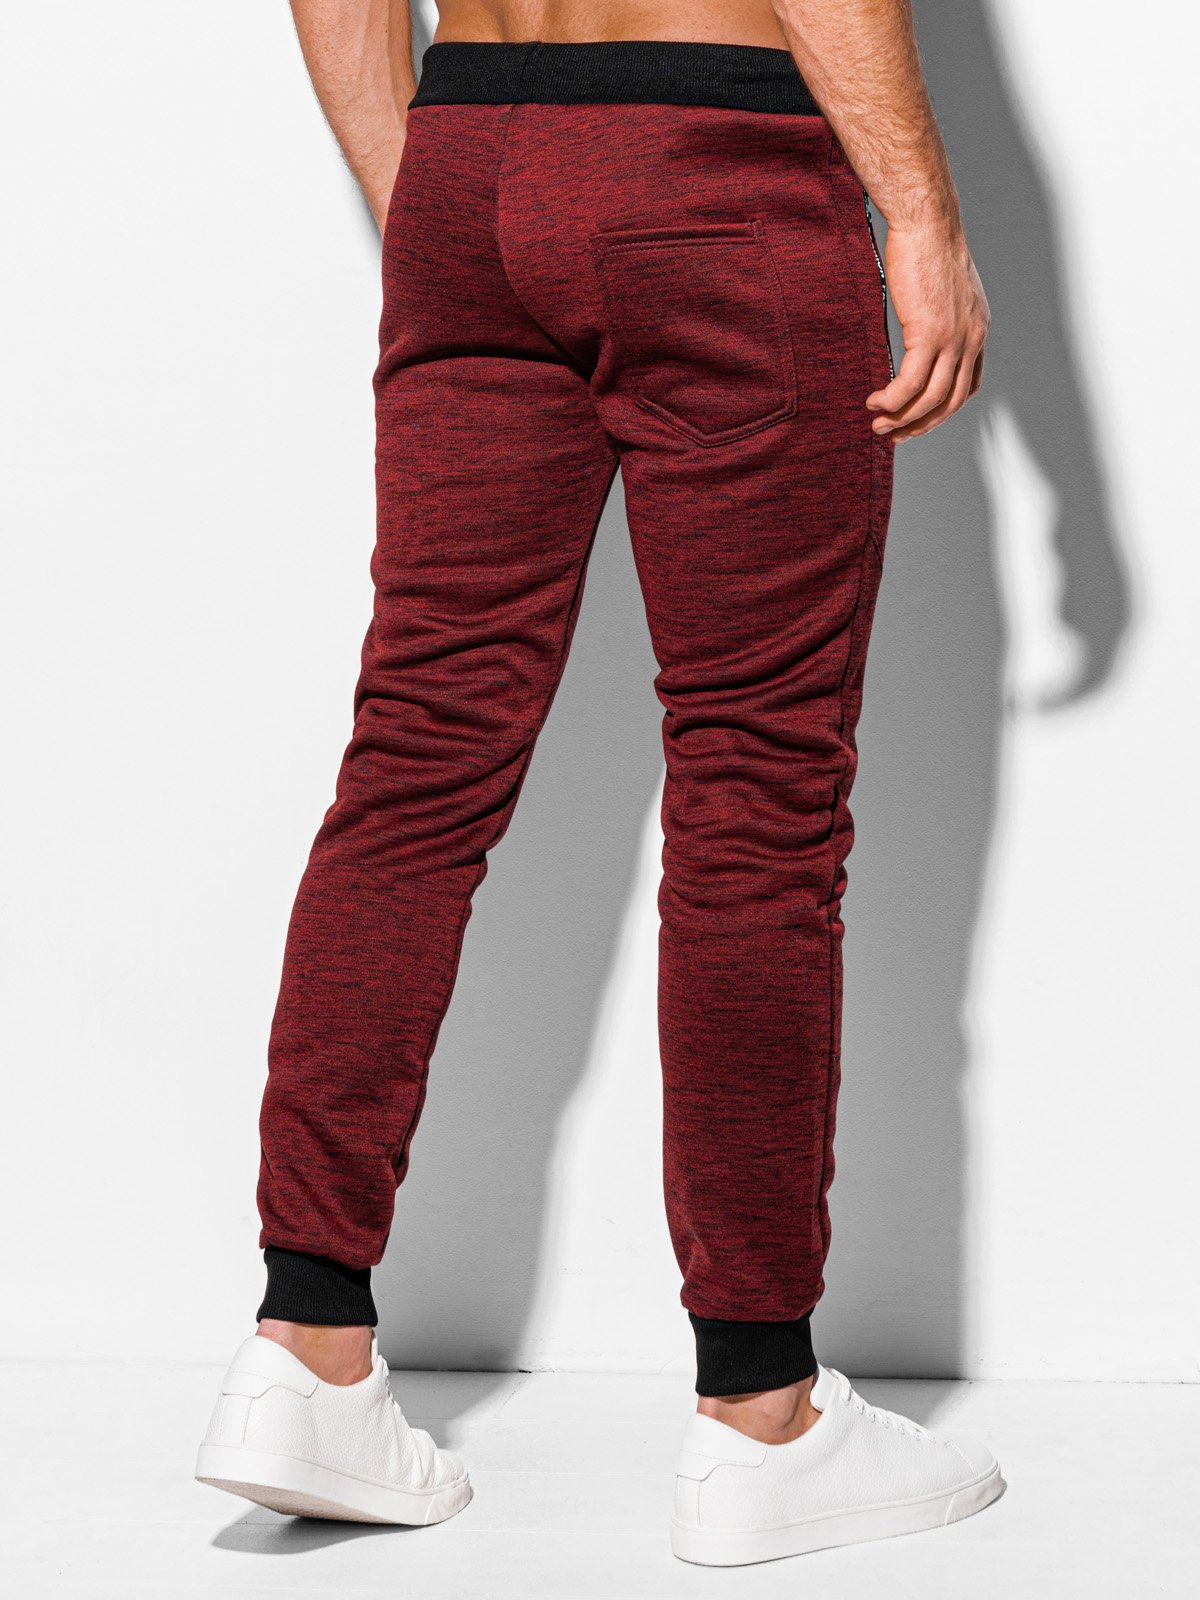 Men's sweatpants - light brown P947  MODONE wholesale - Clothing For Men